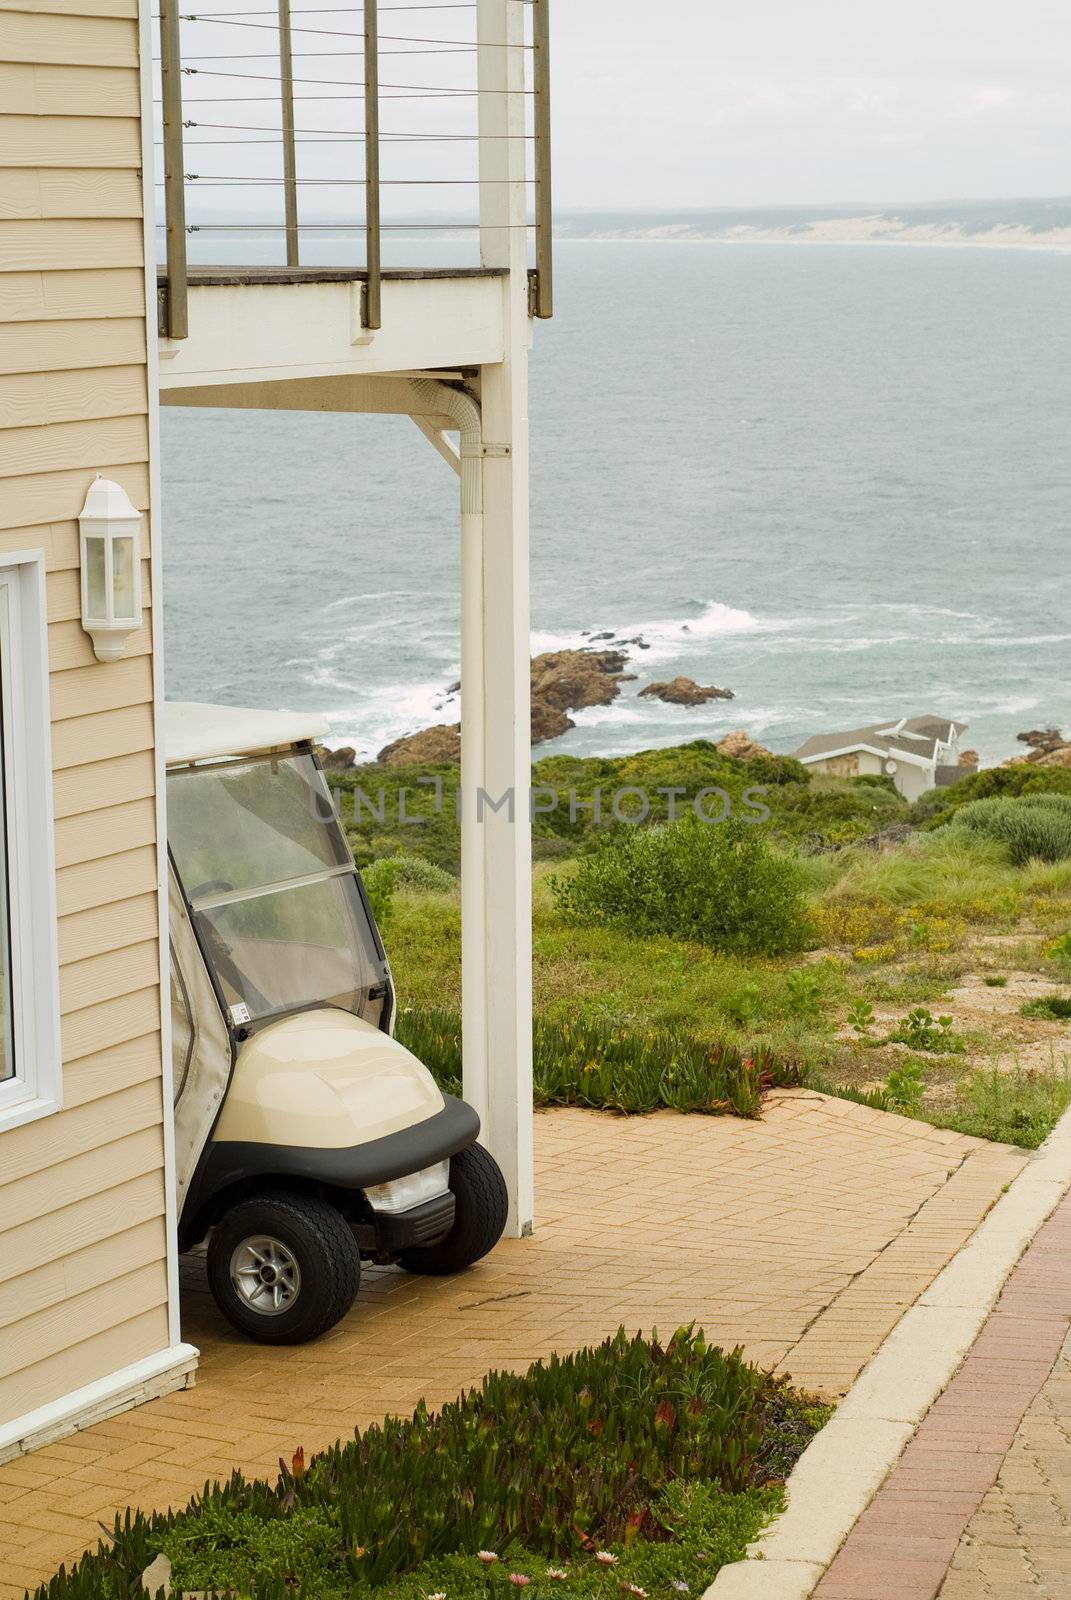 Golf cart outside sea holiday home